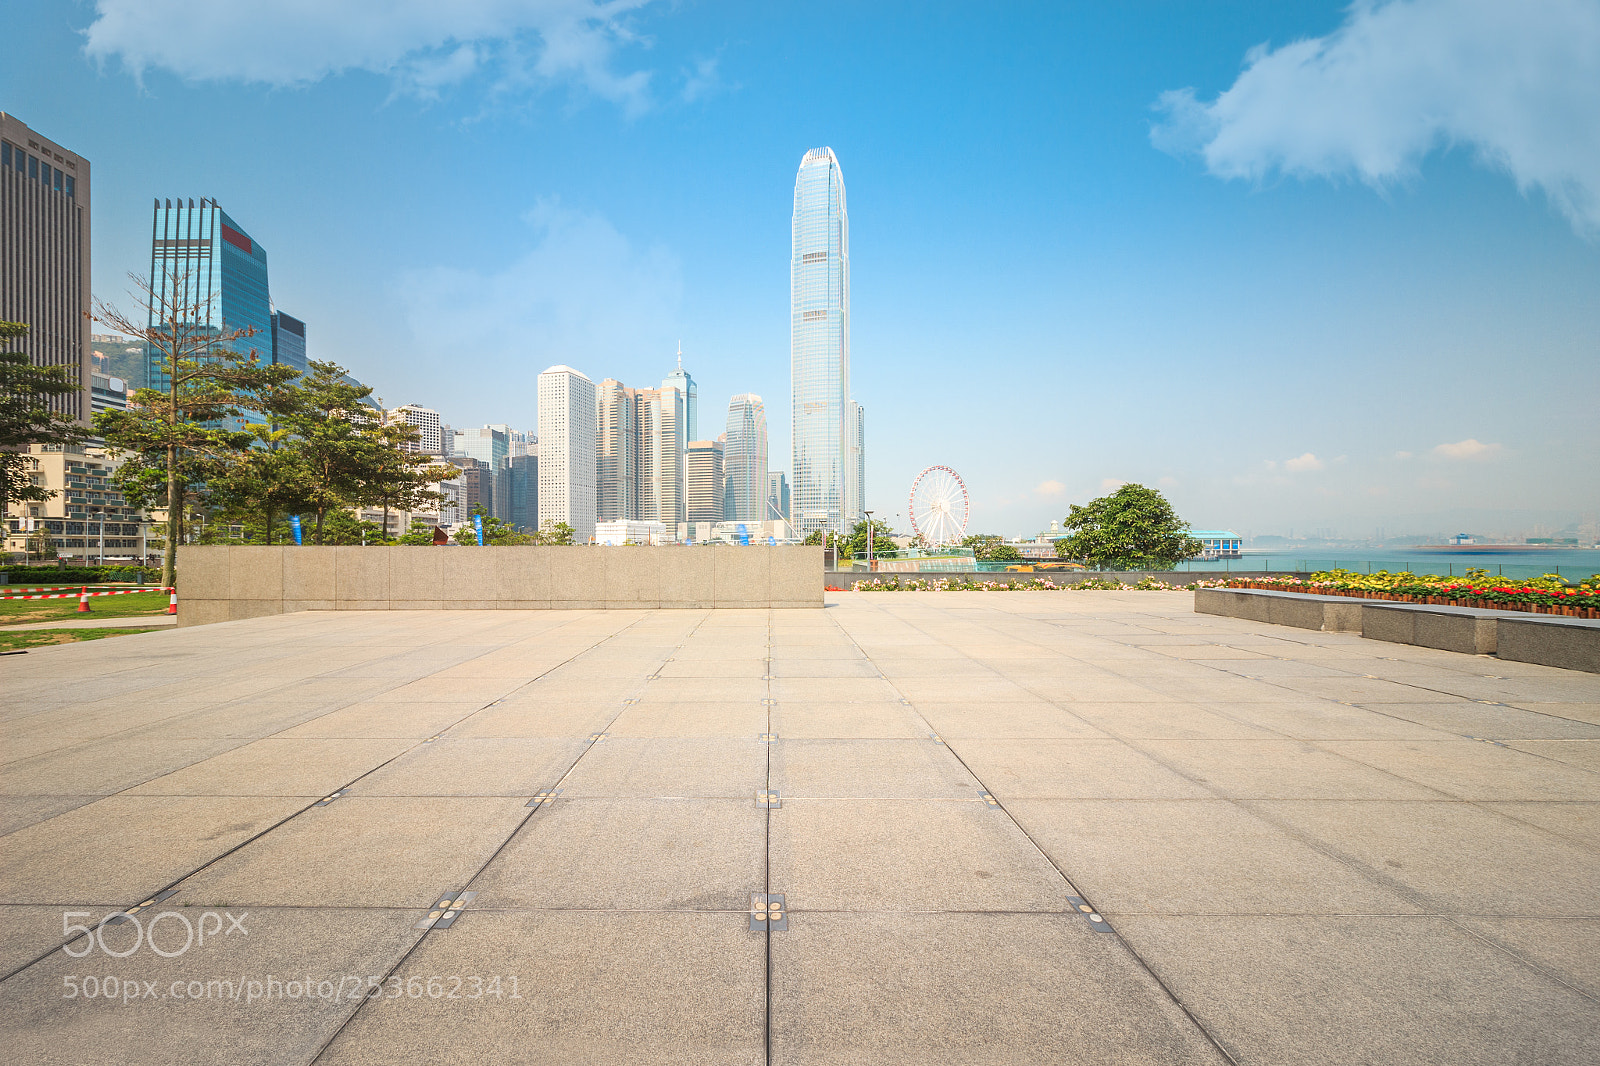 Canon EOS 600D (Rebel EOS T3i / EOS Kiss X5) sample photo. Hongkong central financial district photography